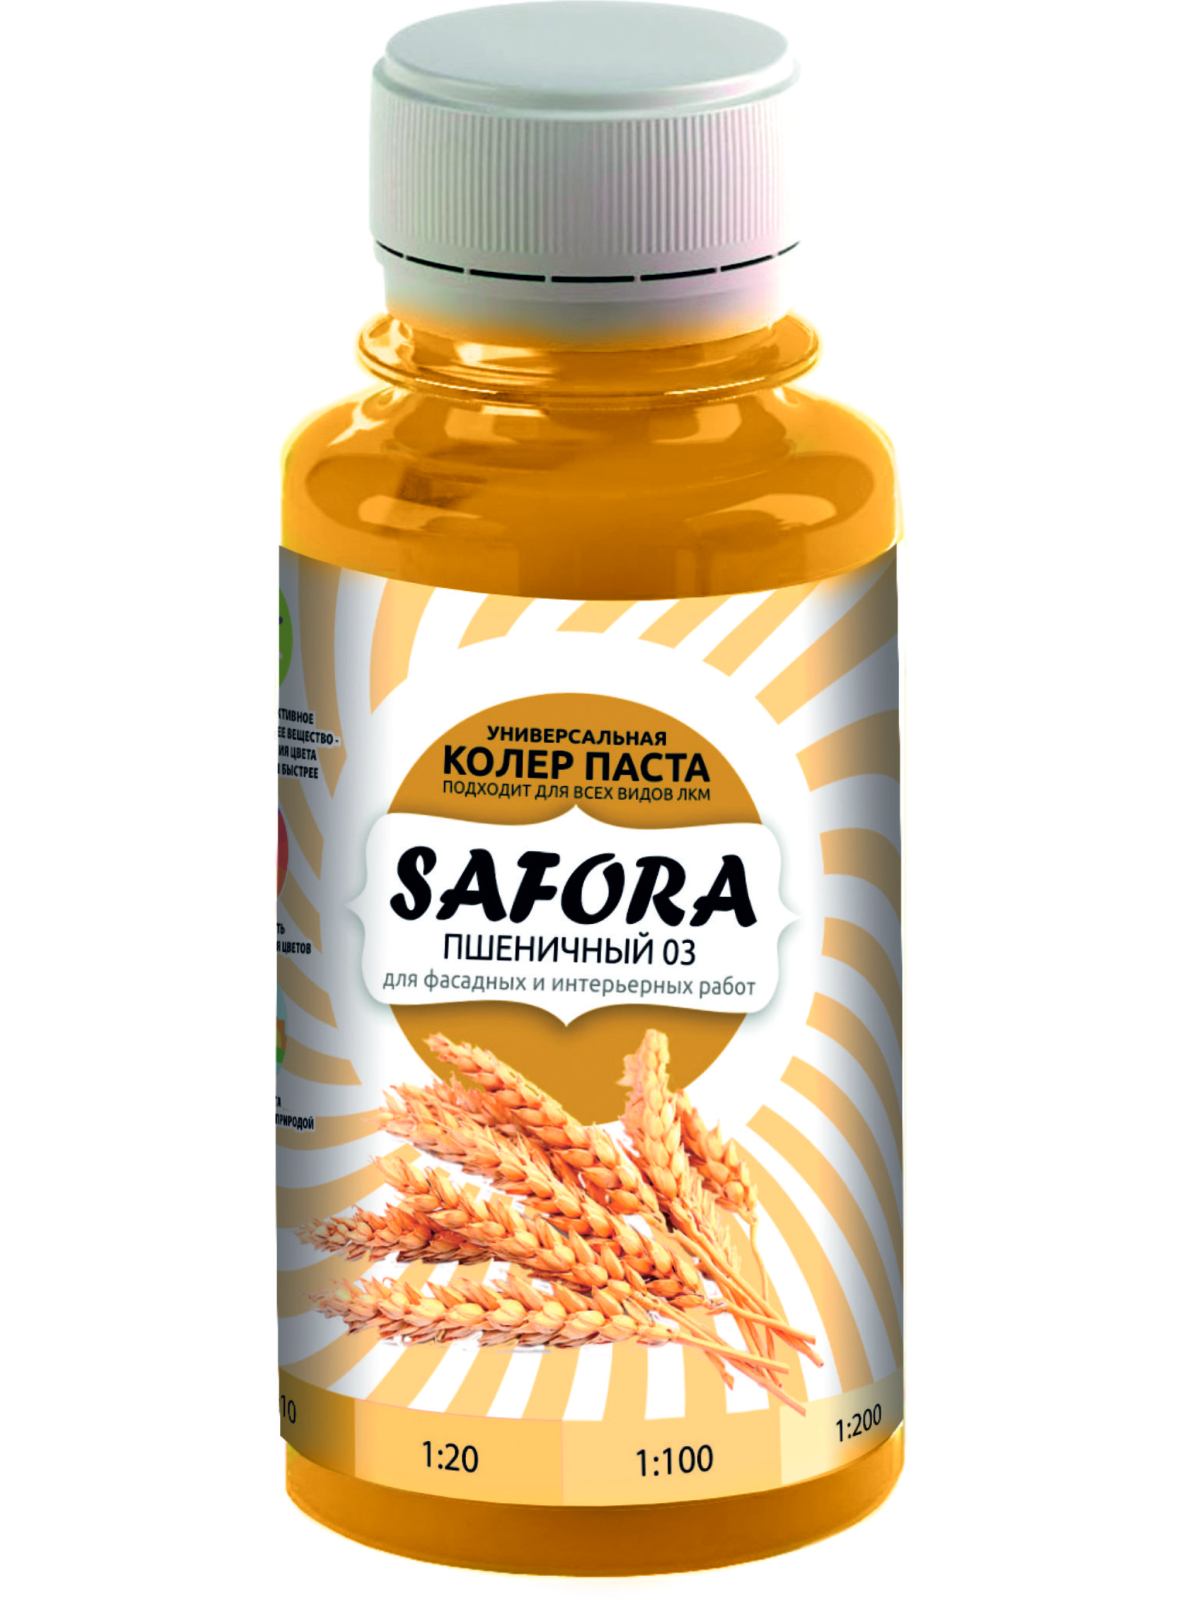 Колеровочная паста SAFORA 03 пшеничный, 100 мл колеровочная паста safora 24 сапфир 100 мл